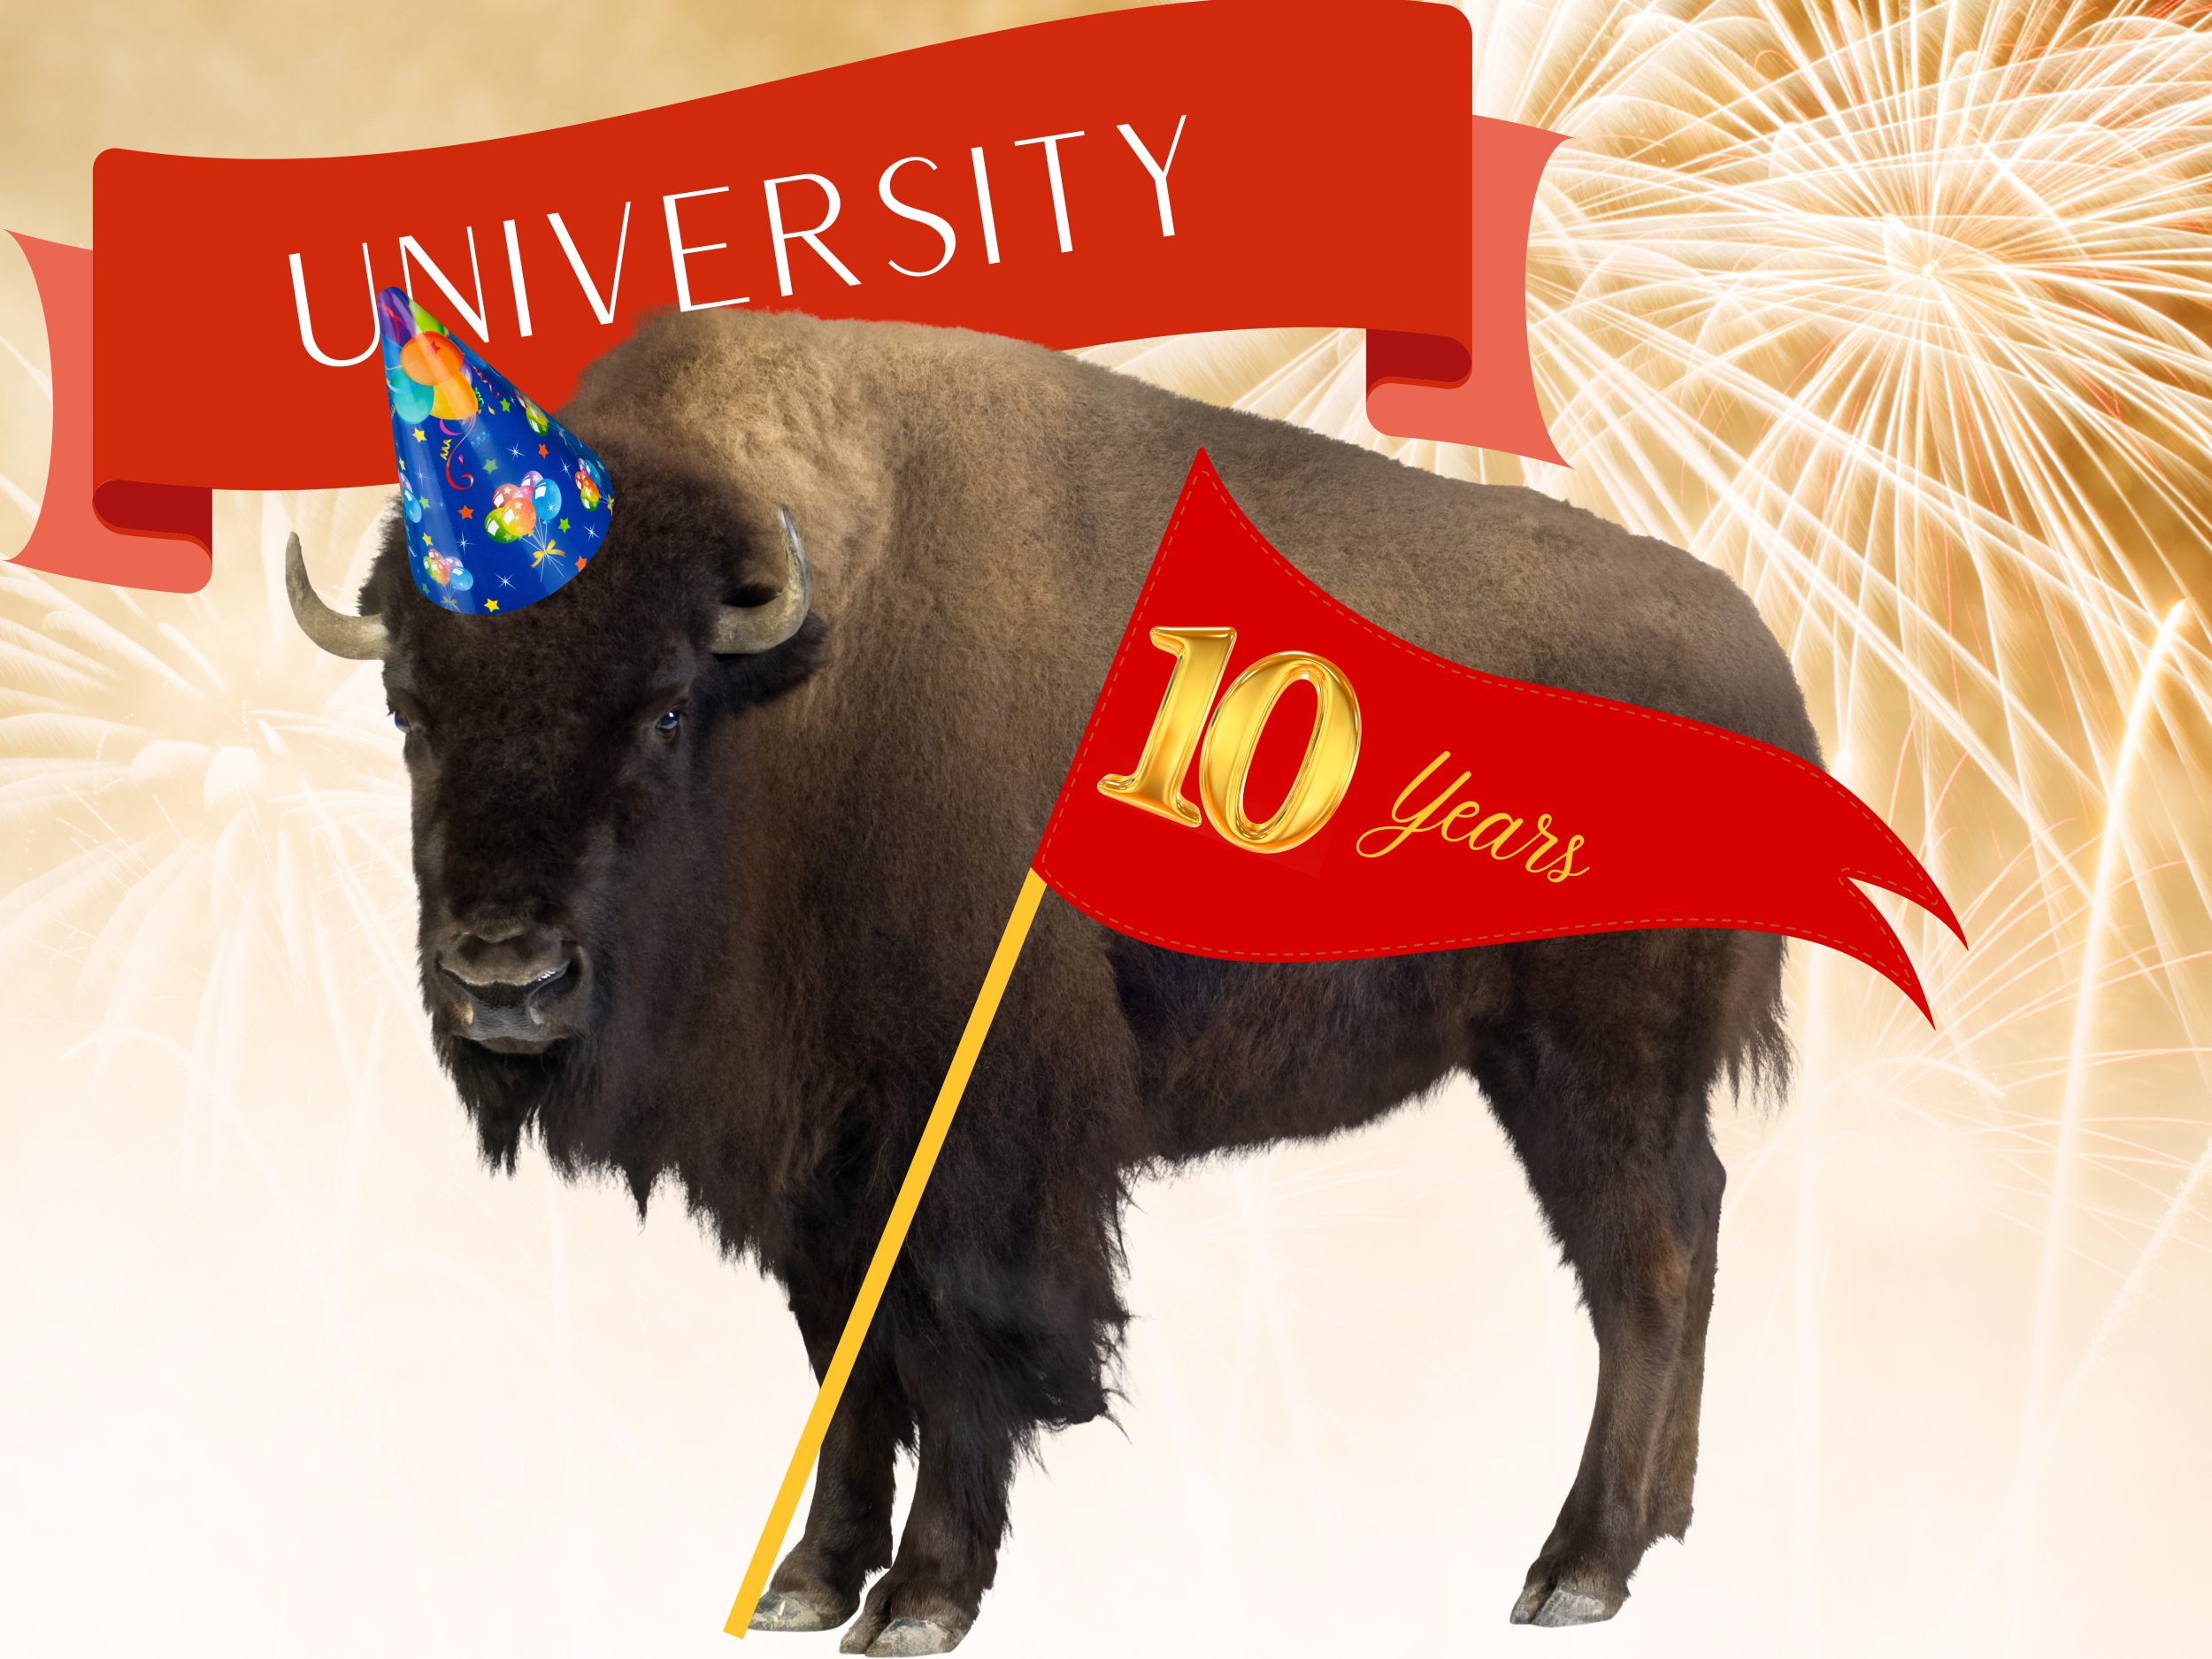 Here’s what 10-years of ‘university’ status looks like at Utah Tech